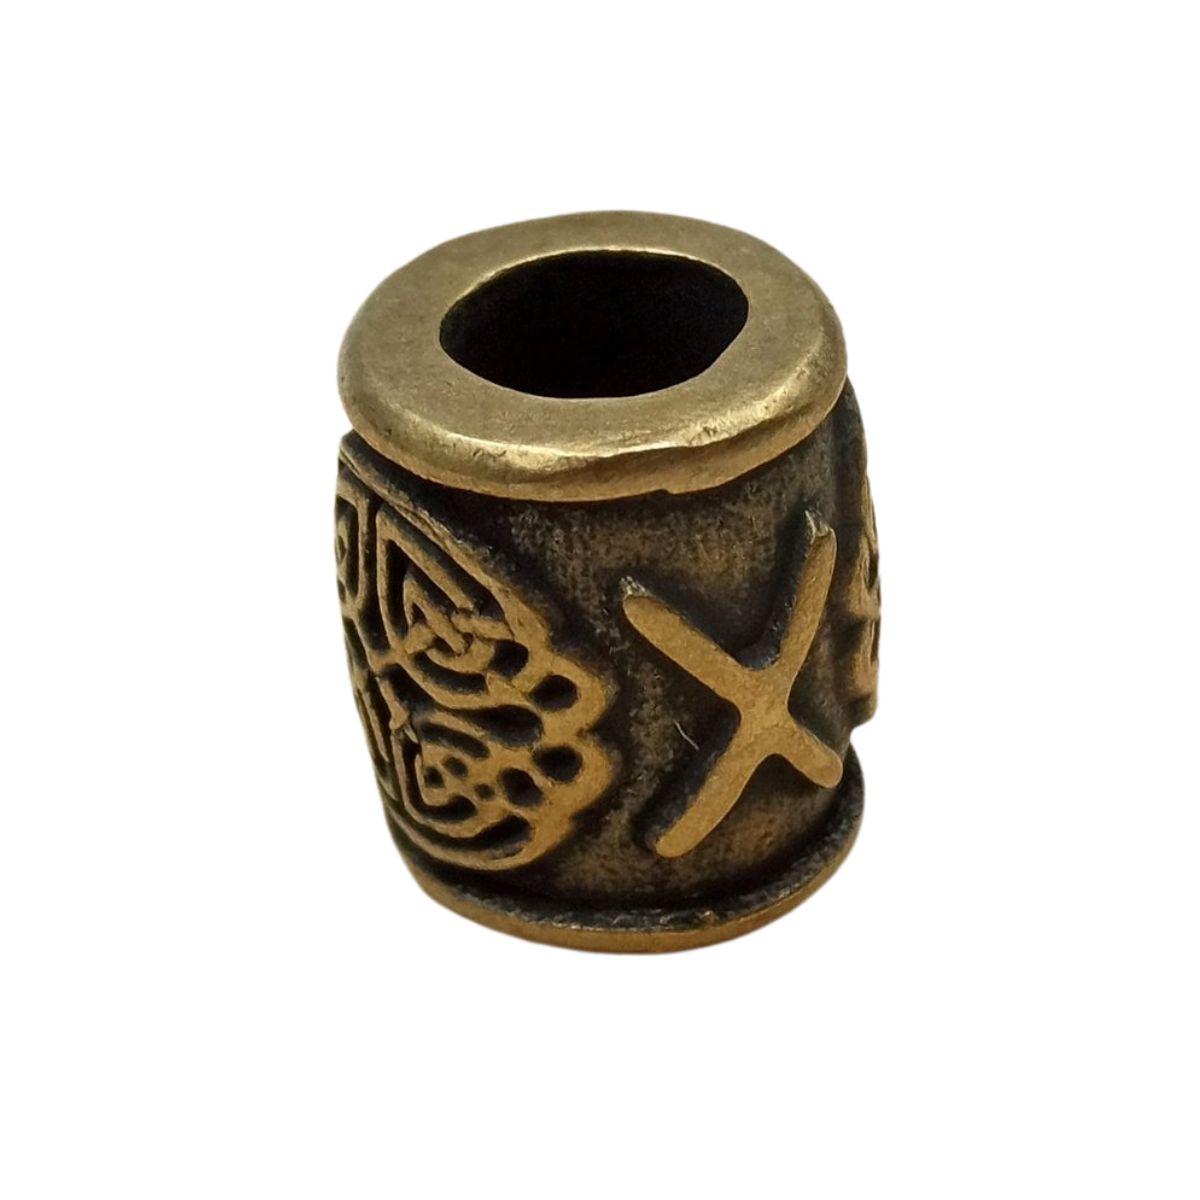 Gebo rune bronze bead